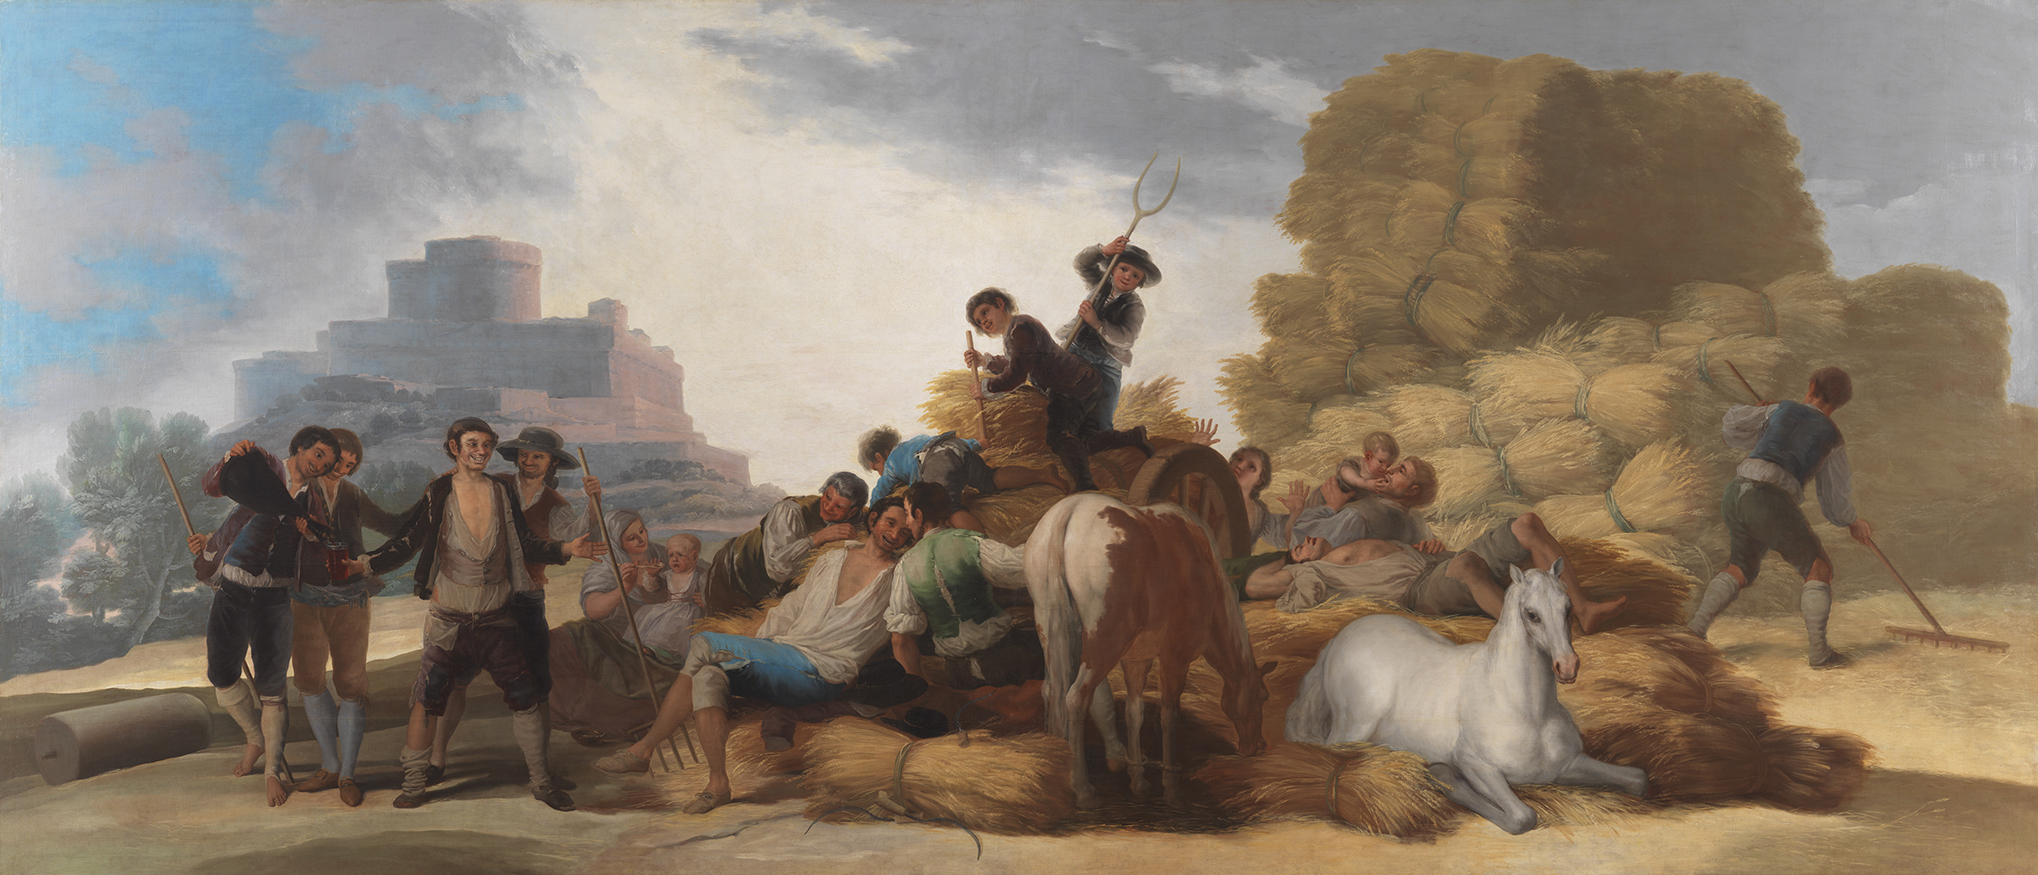 Iberdrola patrocina la restauración del cuadro -La era- de Goya